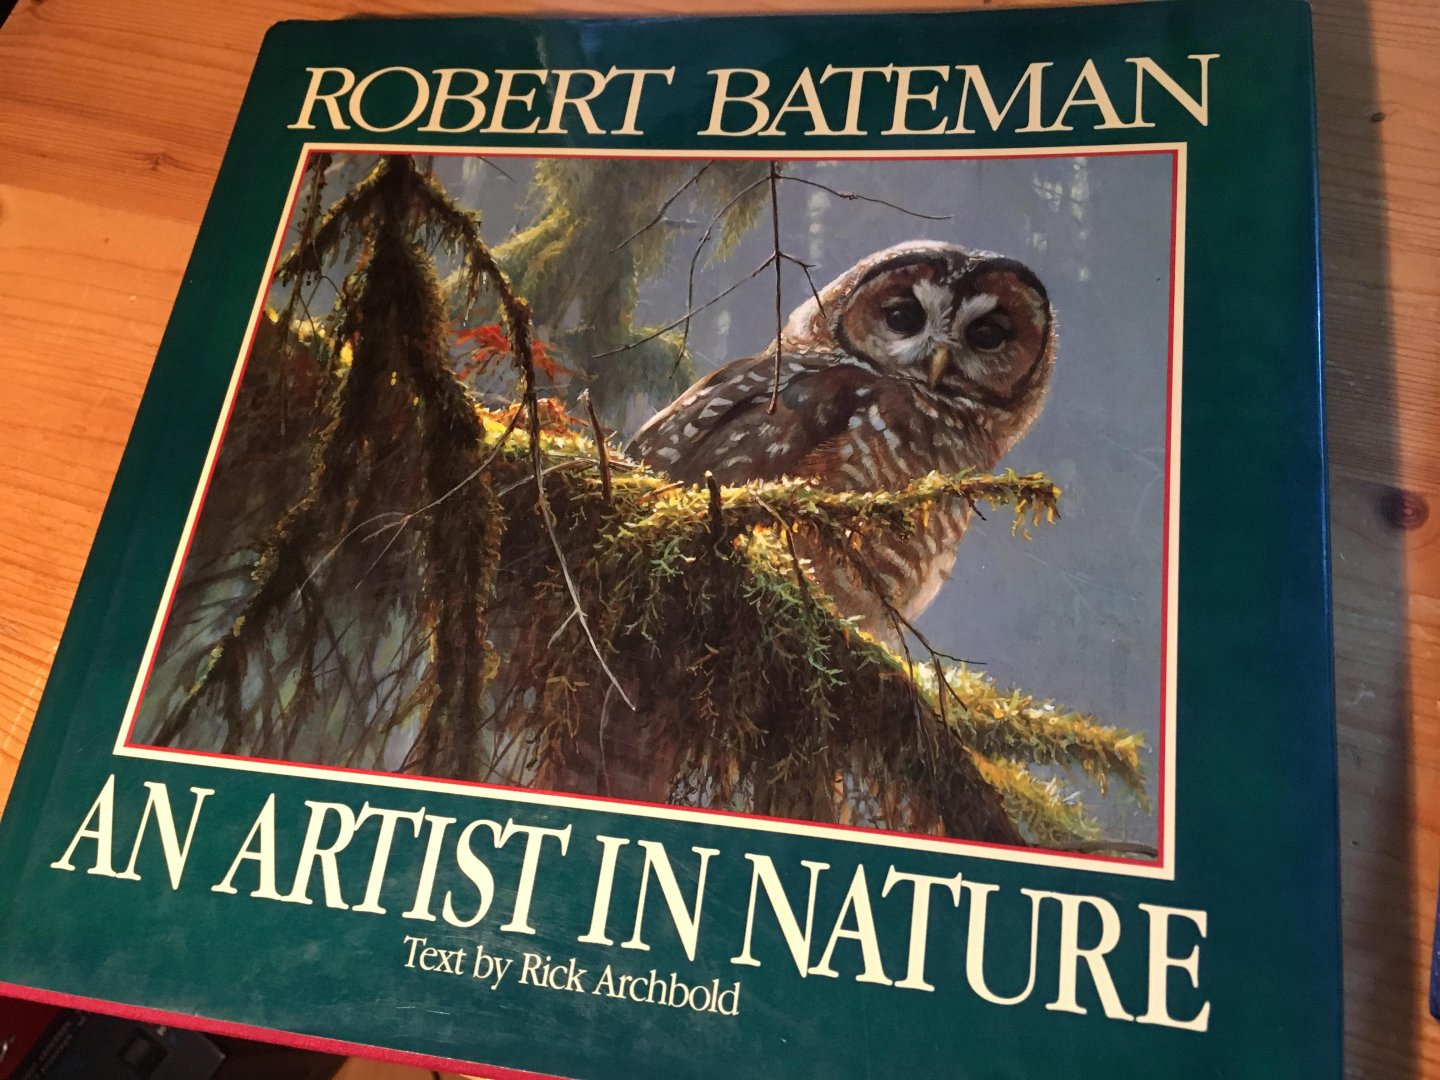 Archbold, R & Robert Bateman - An Artist in Nature